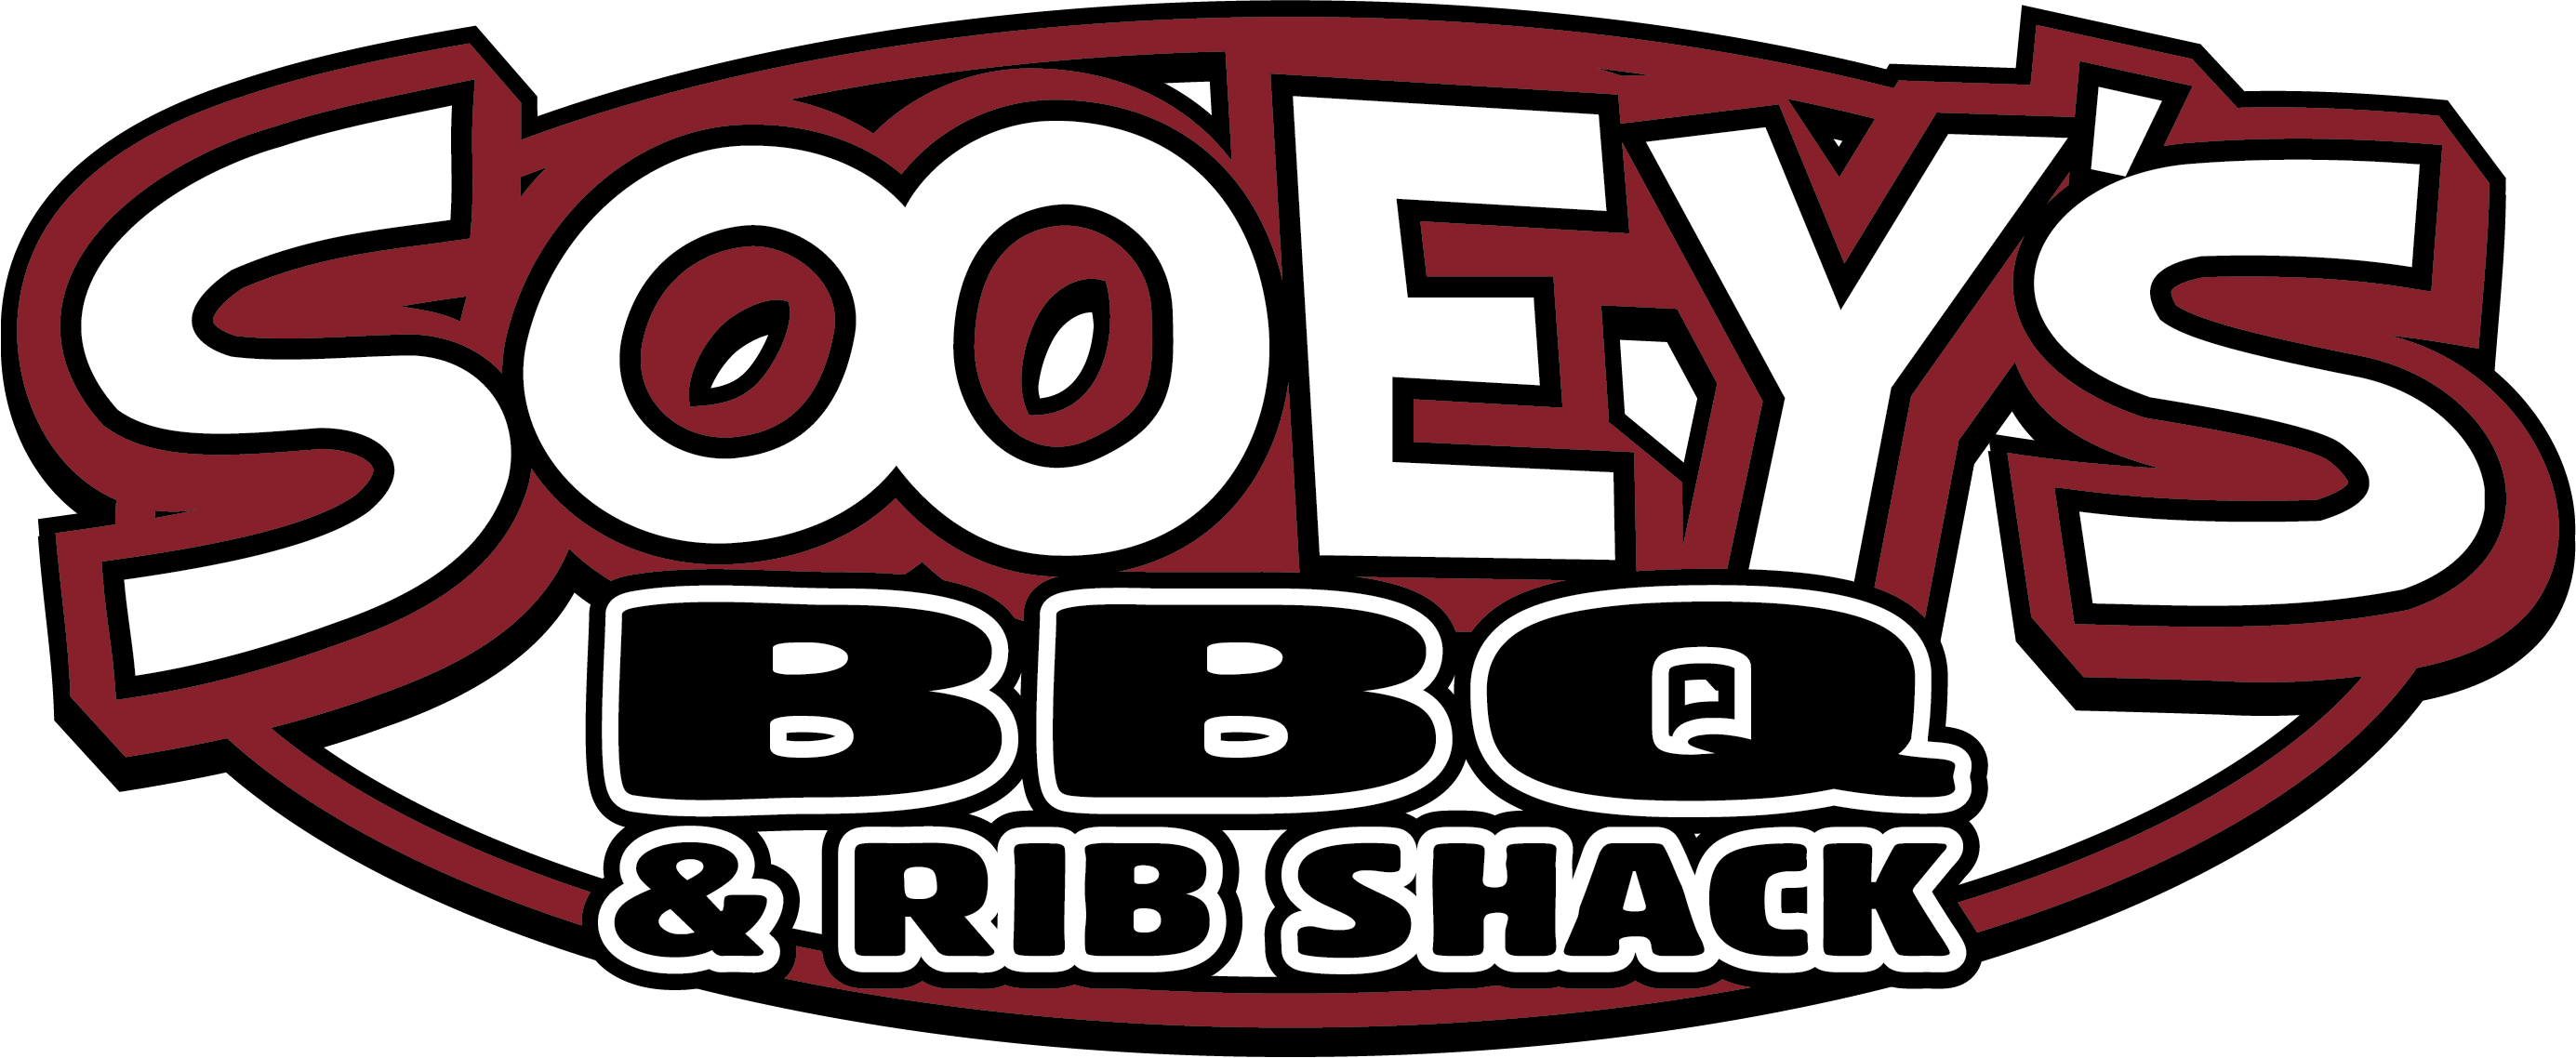 Sooey's BBQ & Rib Shack Home